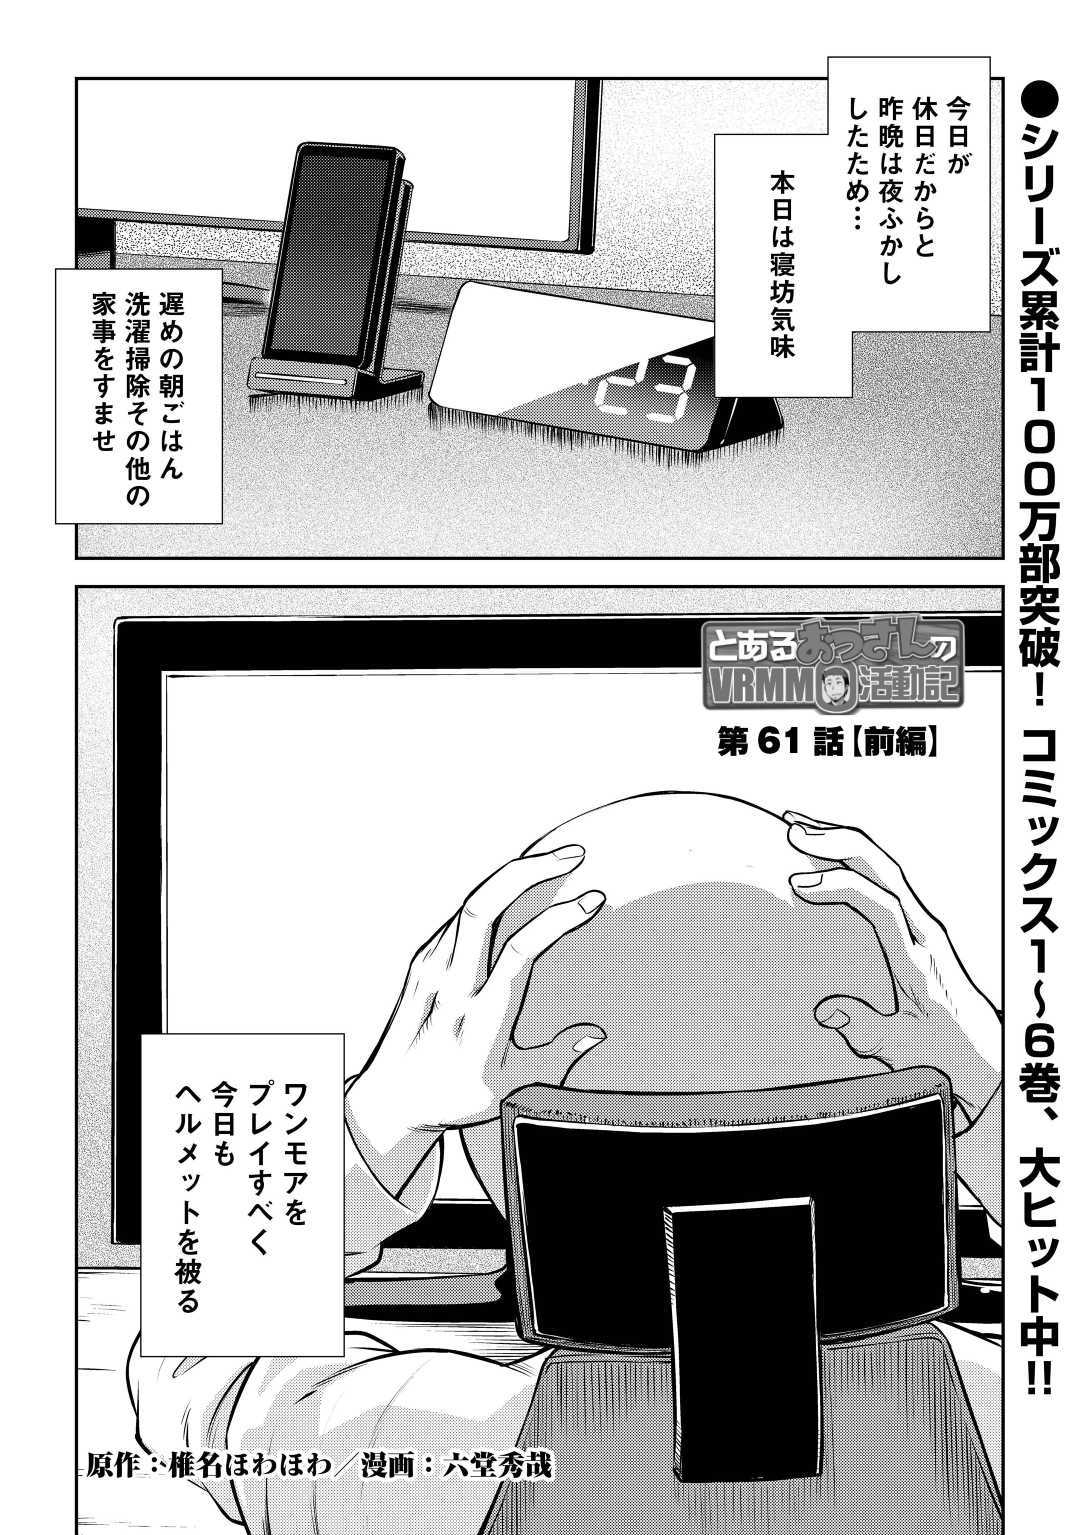 Toaru Ossan no VRMMO Katsudouki - Chapter 61 - Page 1